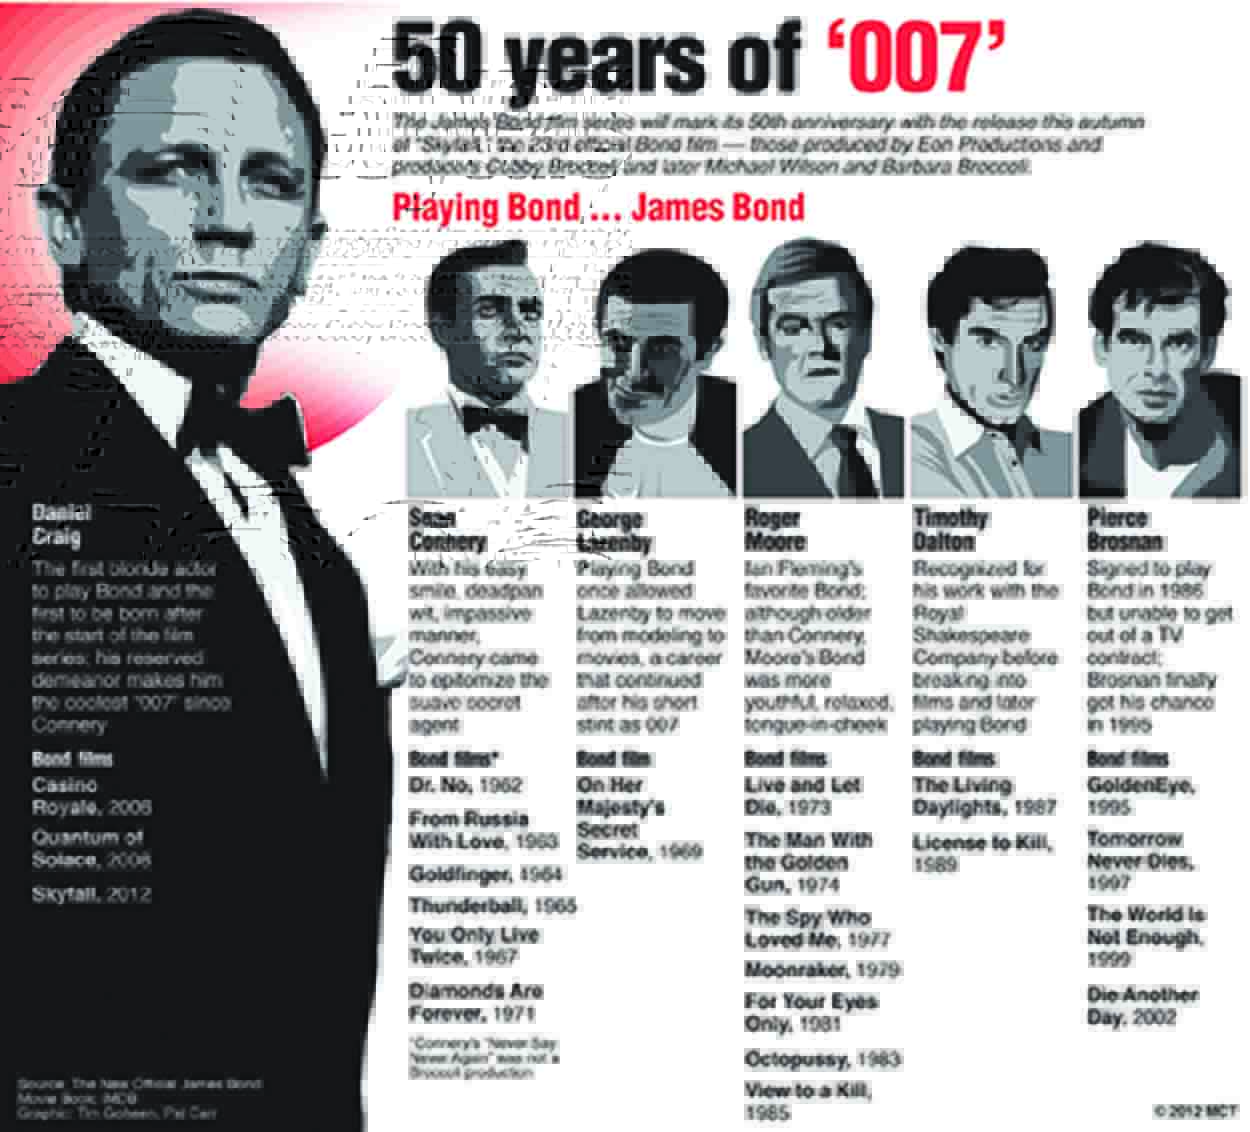 James Bond Movie Cast